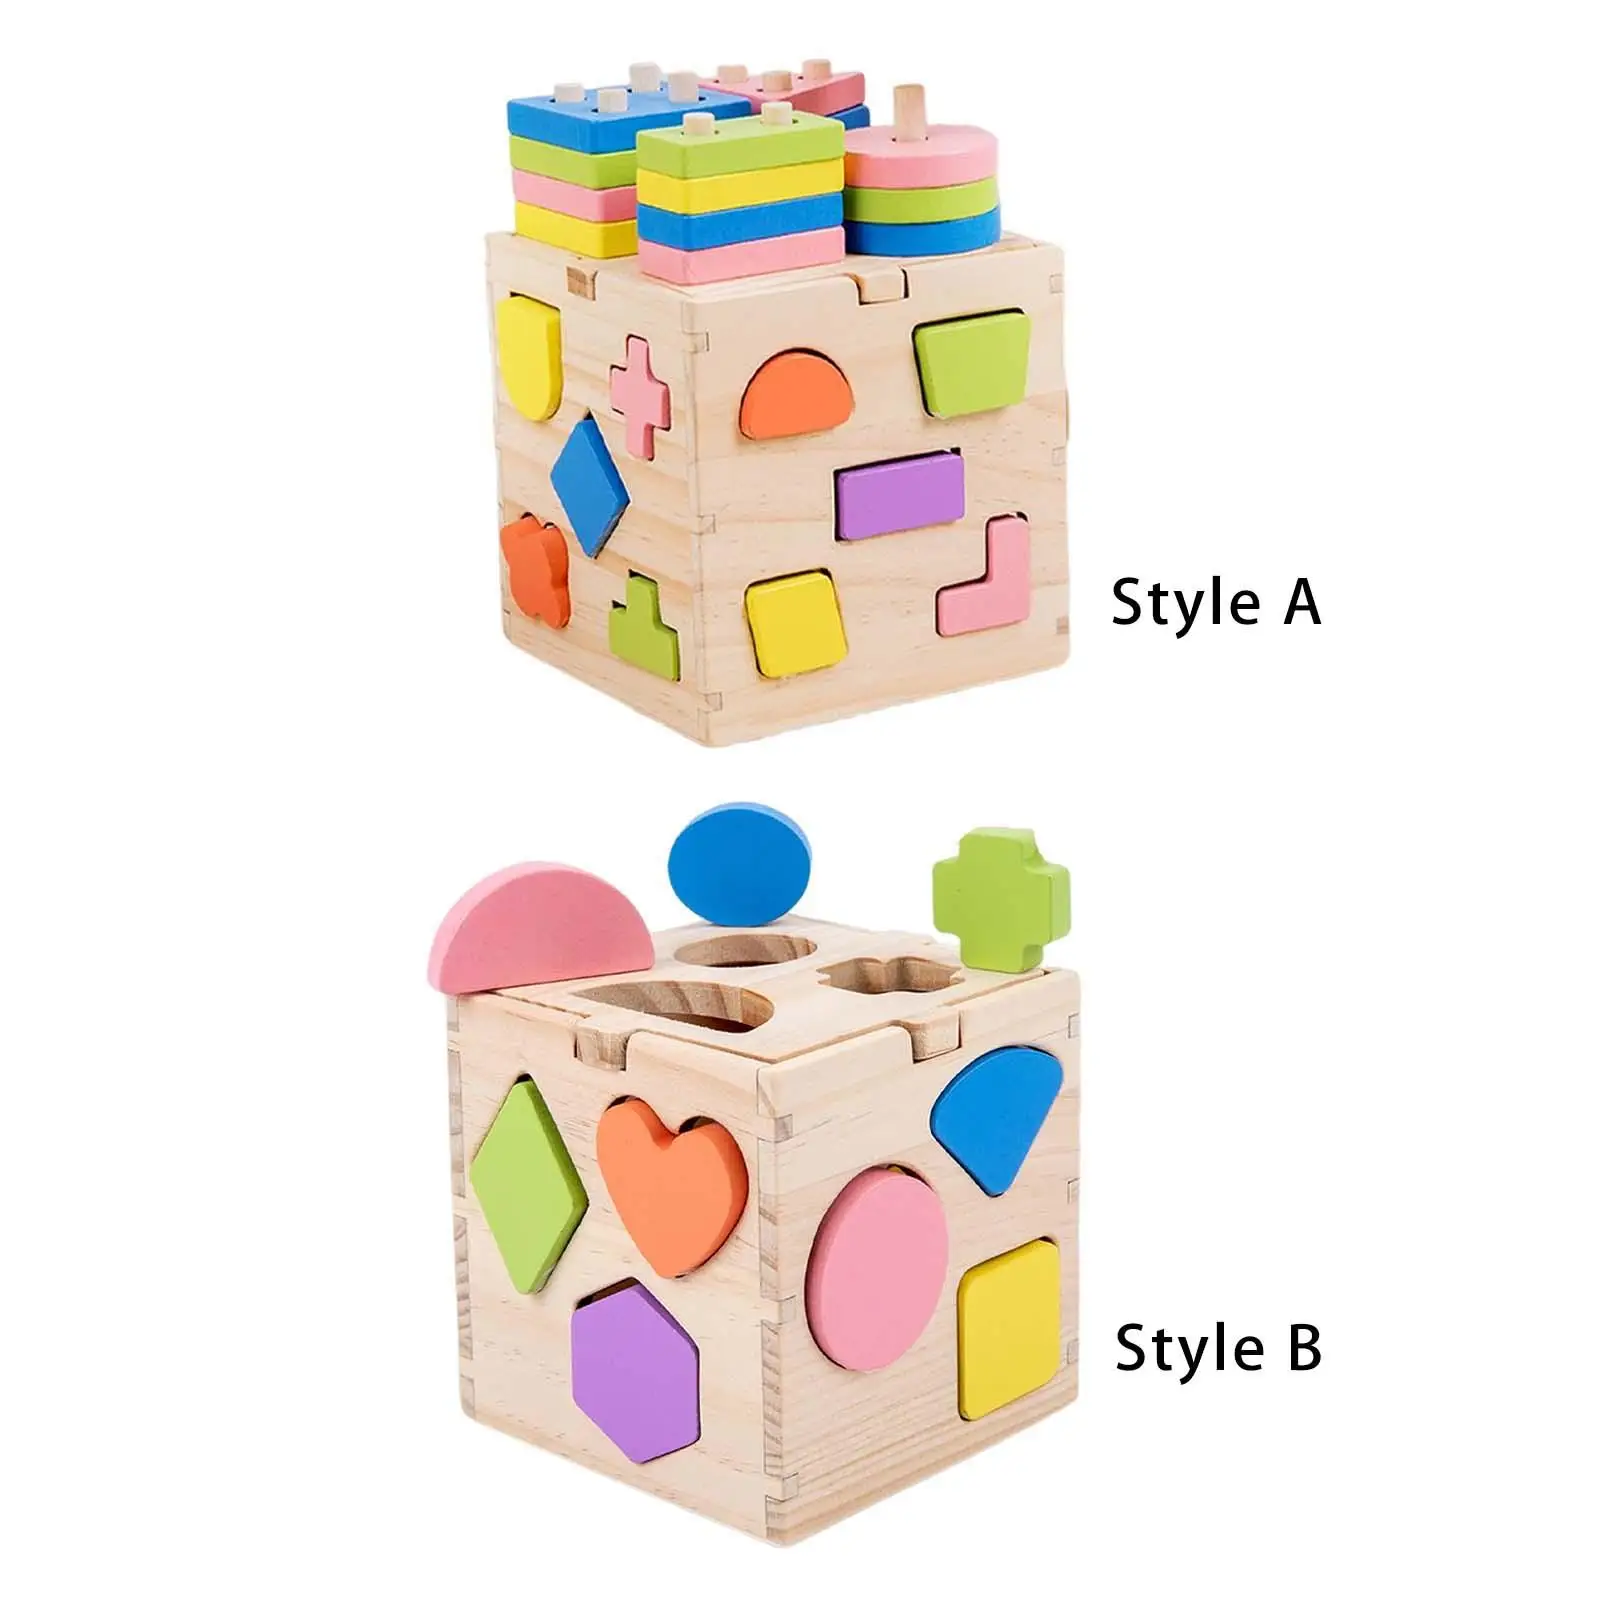 Wooden Wooden Building Blocks Preschool Learning Toys for Kids Children Gift